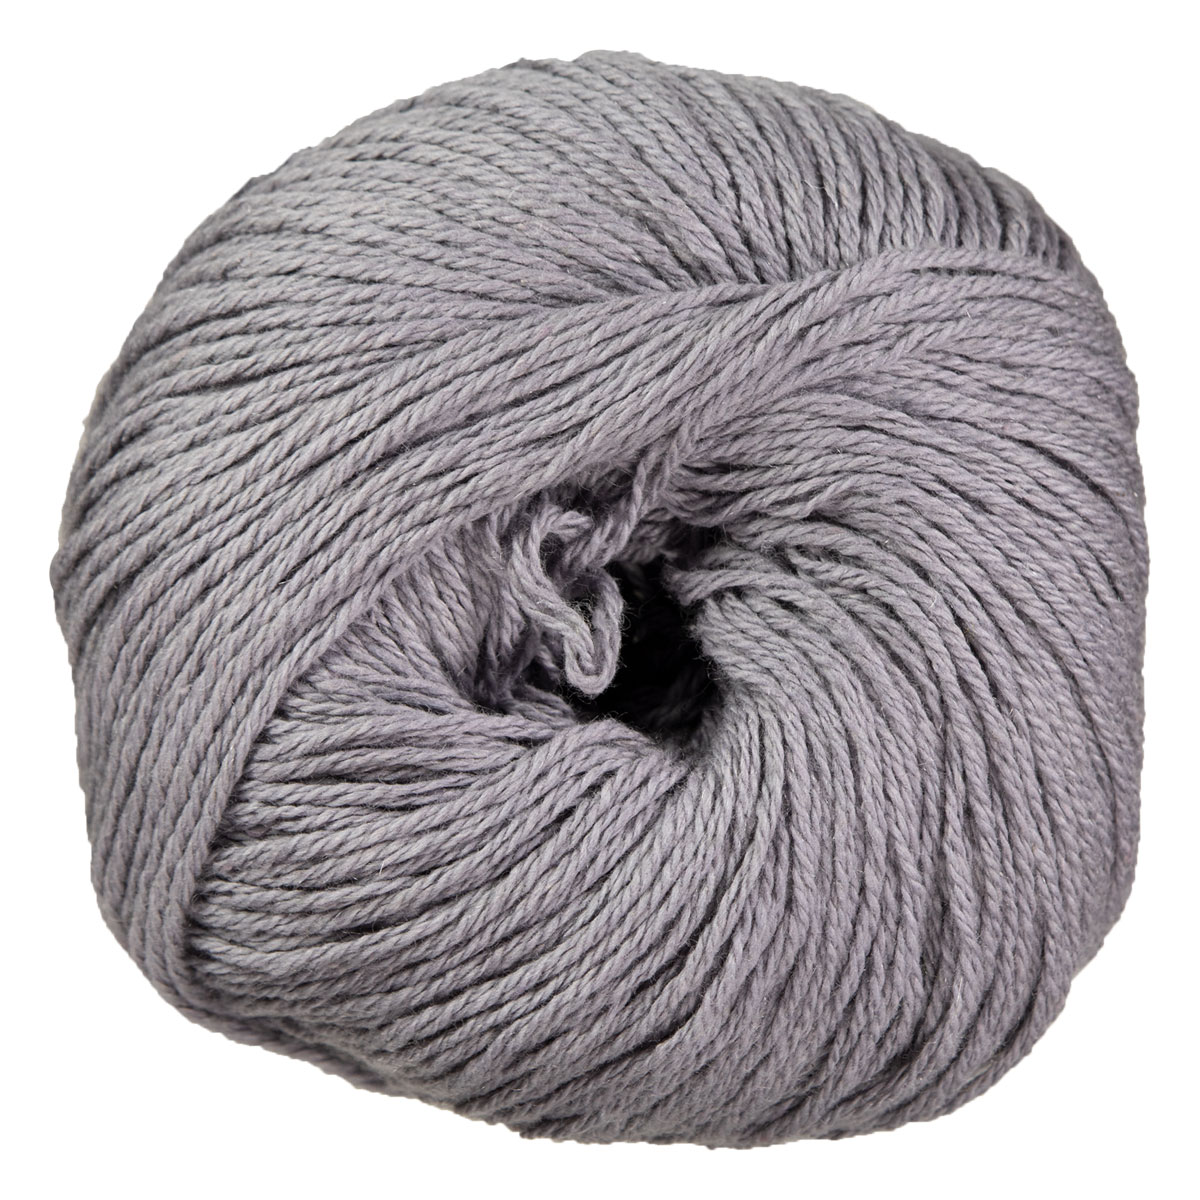 Cotton Cashmere, Rowan Knitting & Crochet Yarn